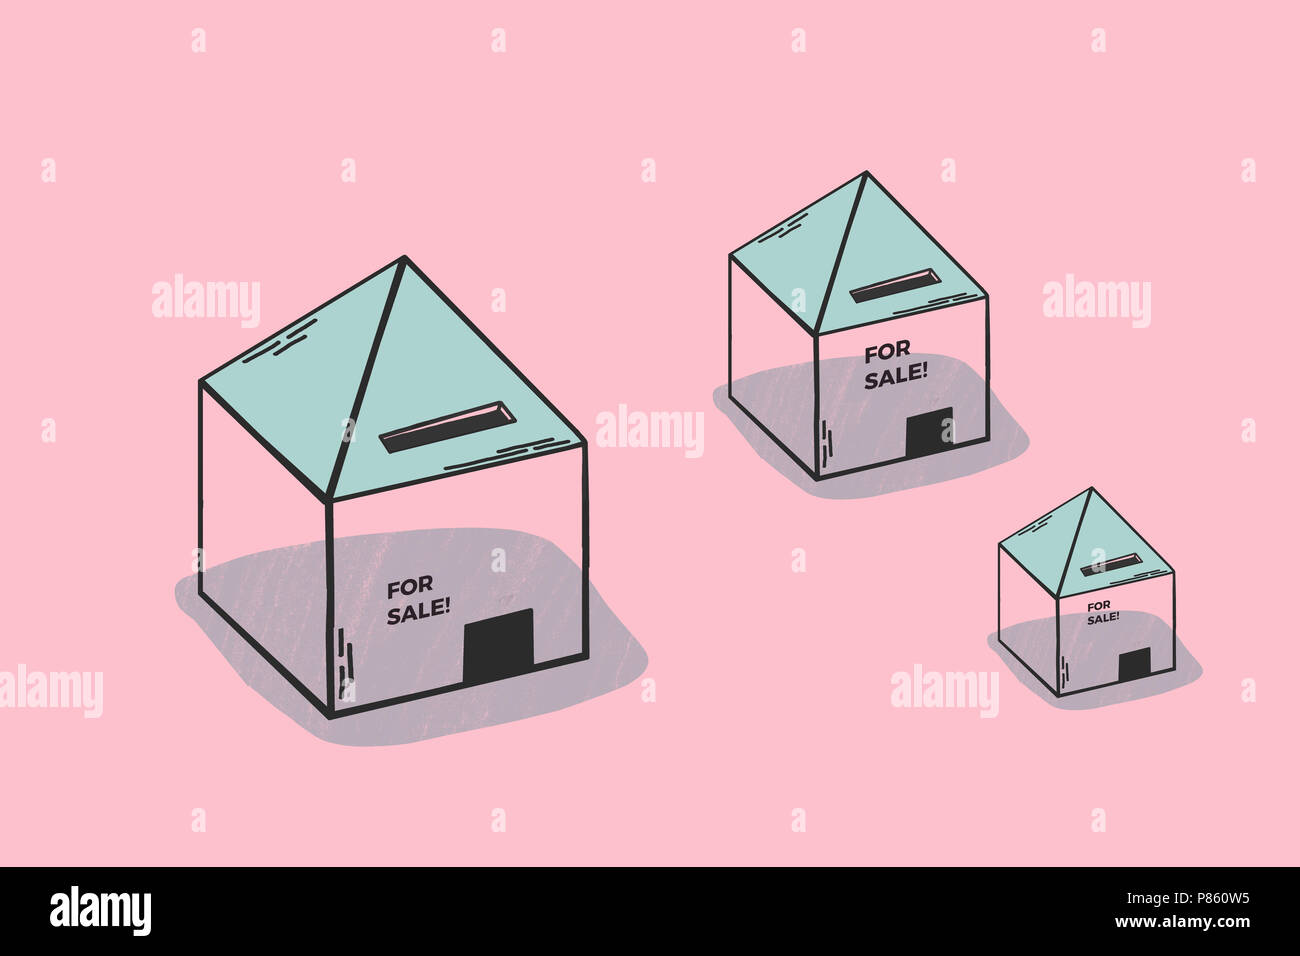 Häuser zum Verkauf. Minimalistische konzeptionelle Darstellung über die Immobilien, Unternehmen und Investitionen. Zeigen Häuser für Verkauf. Rosa und Blaue Farben für Tinte. Stockfoto